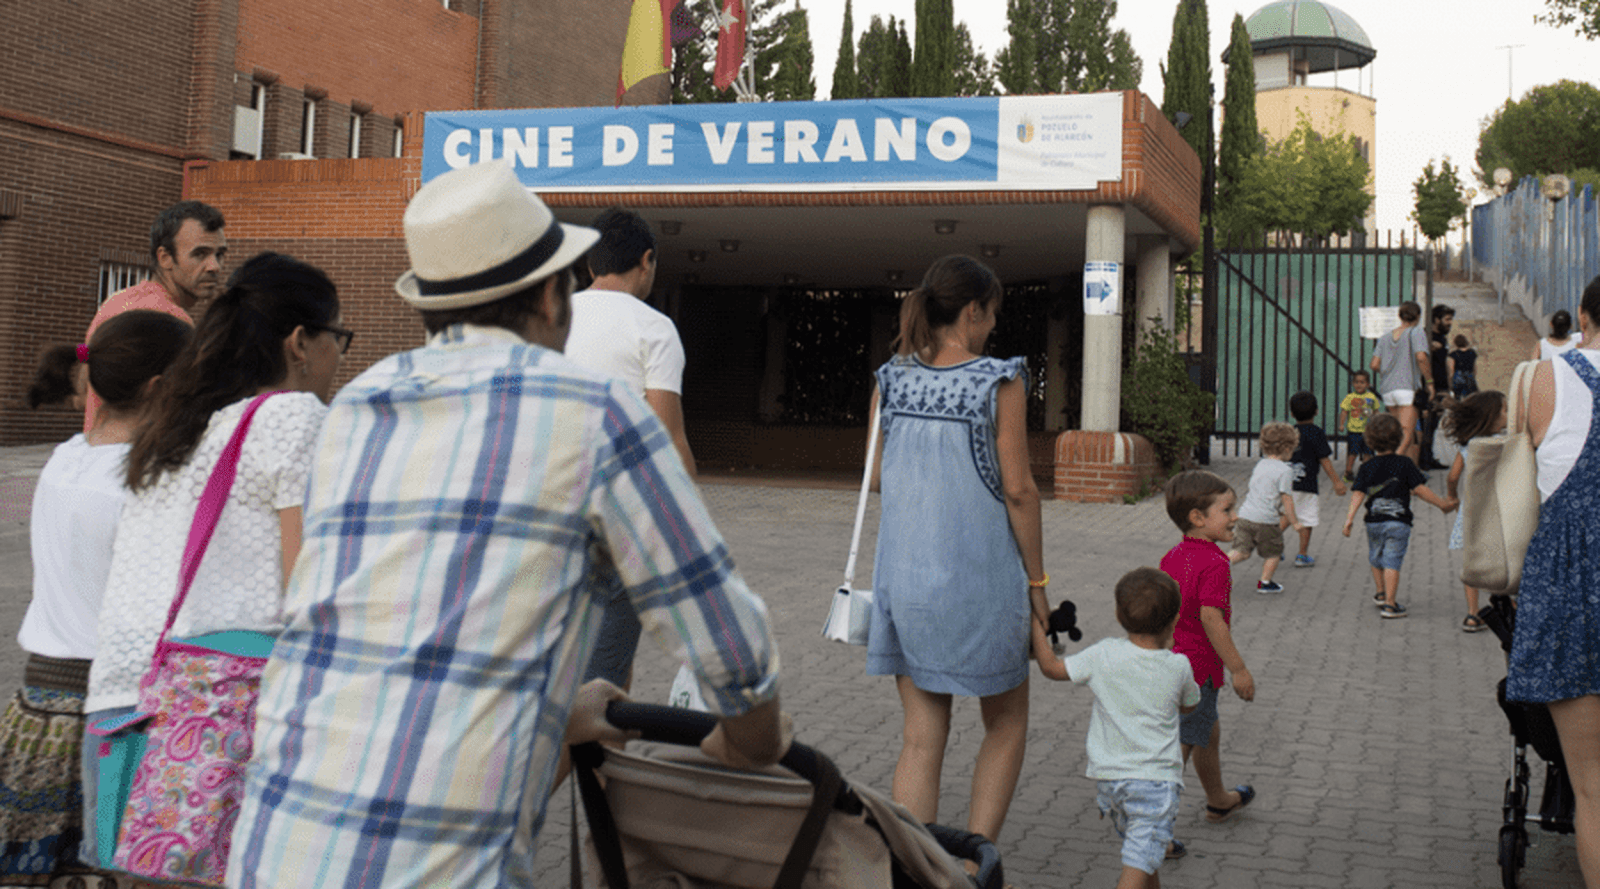 Nueva temporada de "Cine de Verano" en Pozuelo de Alarcón con películas para toda la familia